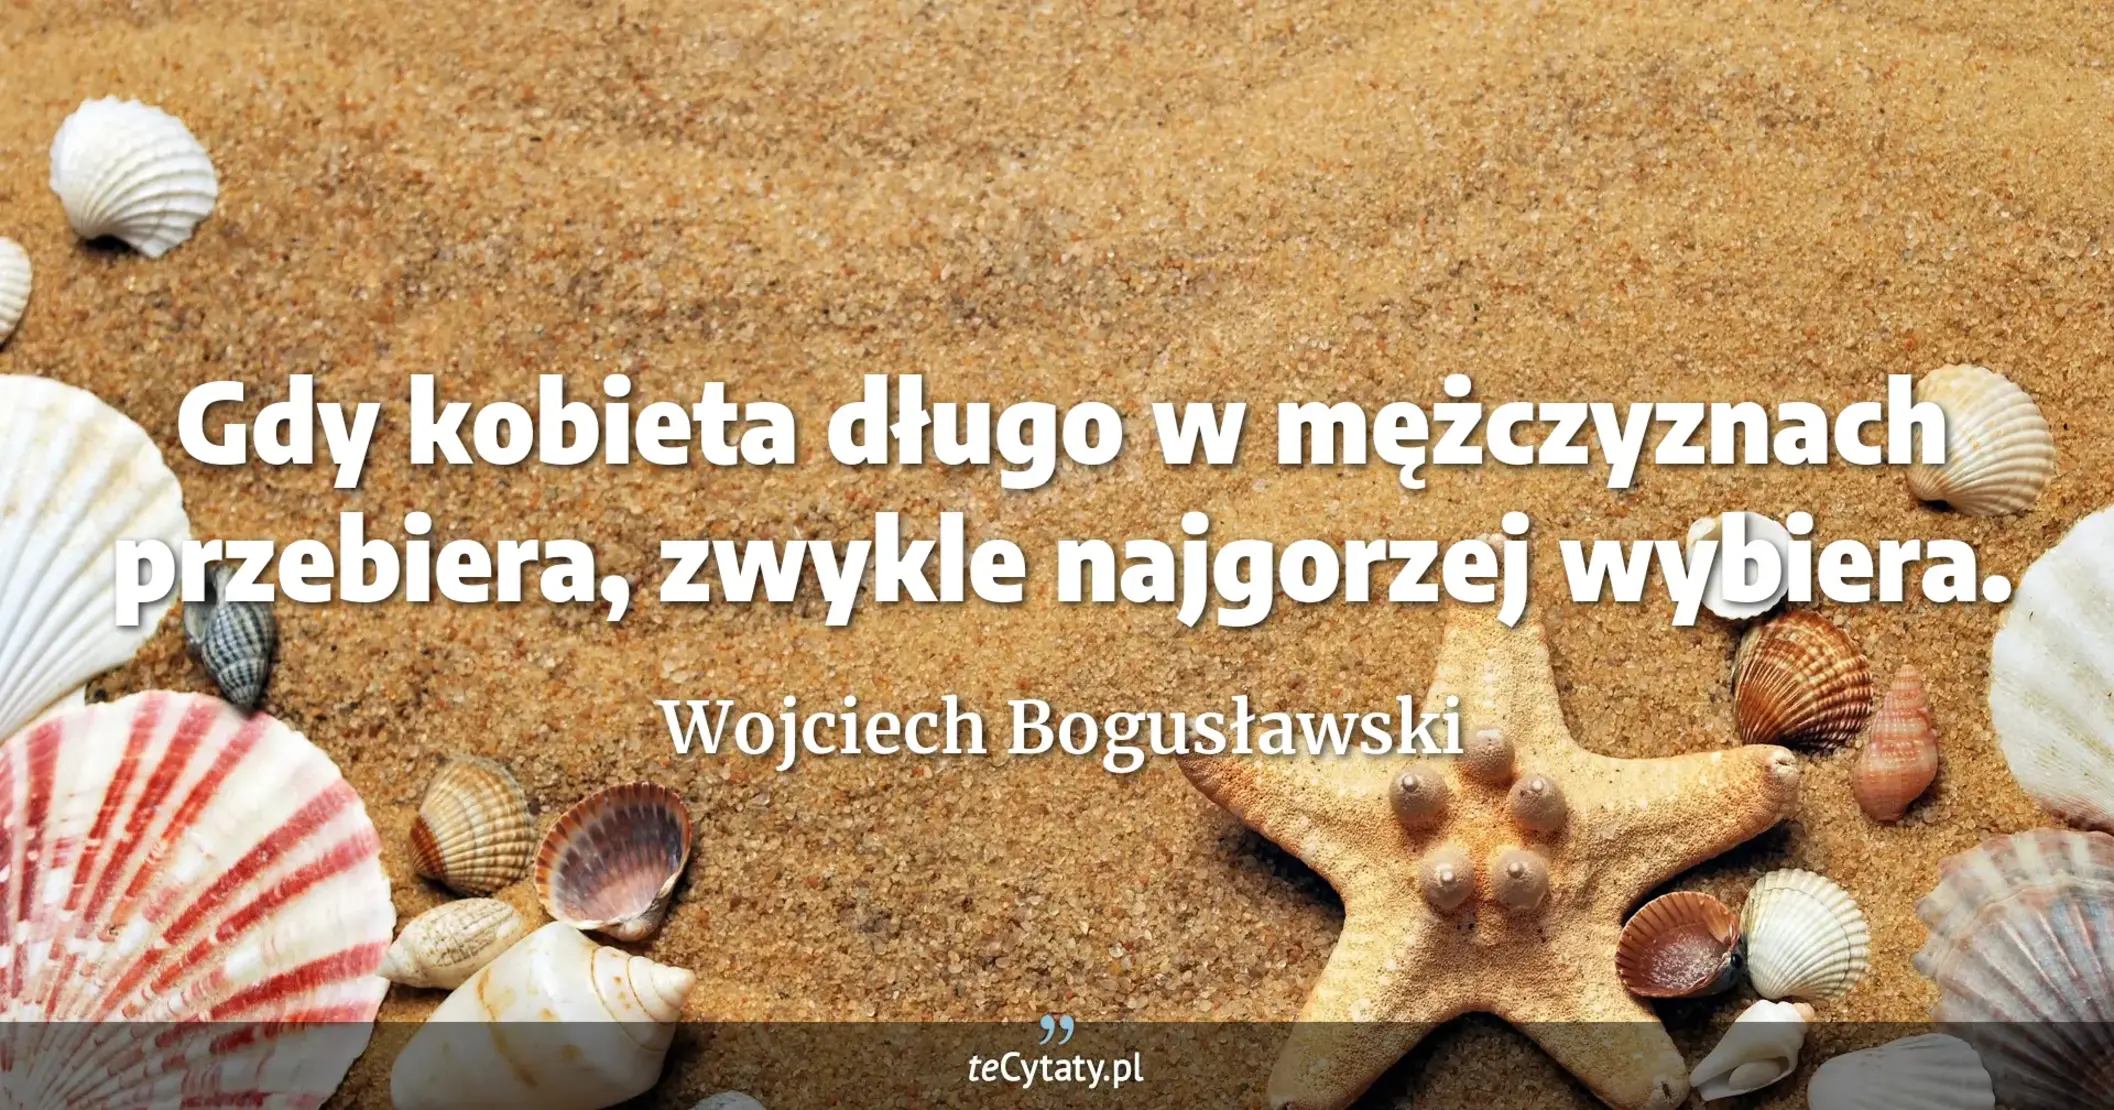 Gdy kobieta długo w mężczyznach przebiera, zwykle najgorzej wybiera. - Wojciech Bogusławski